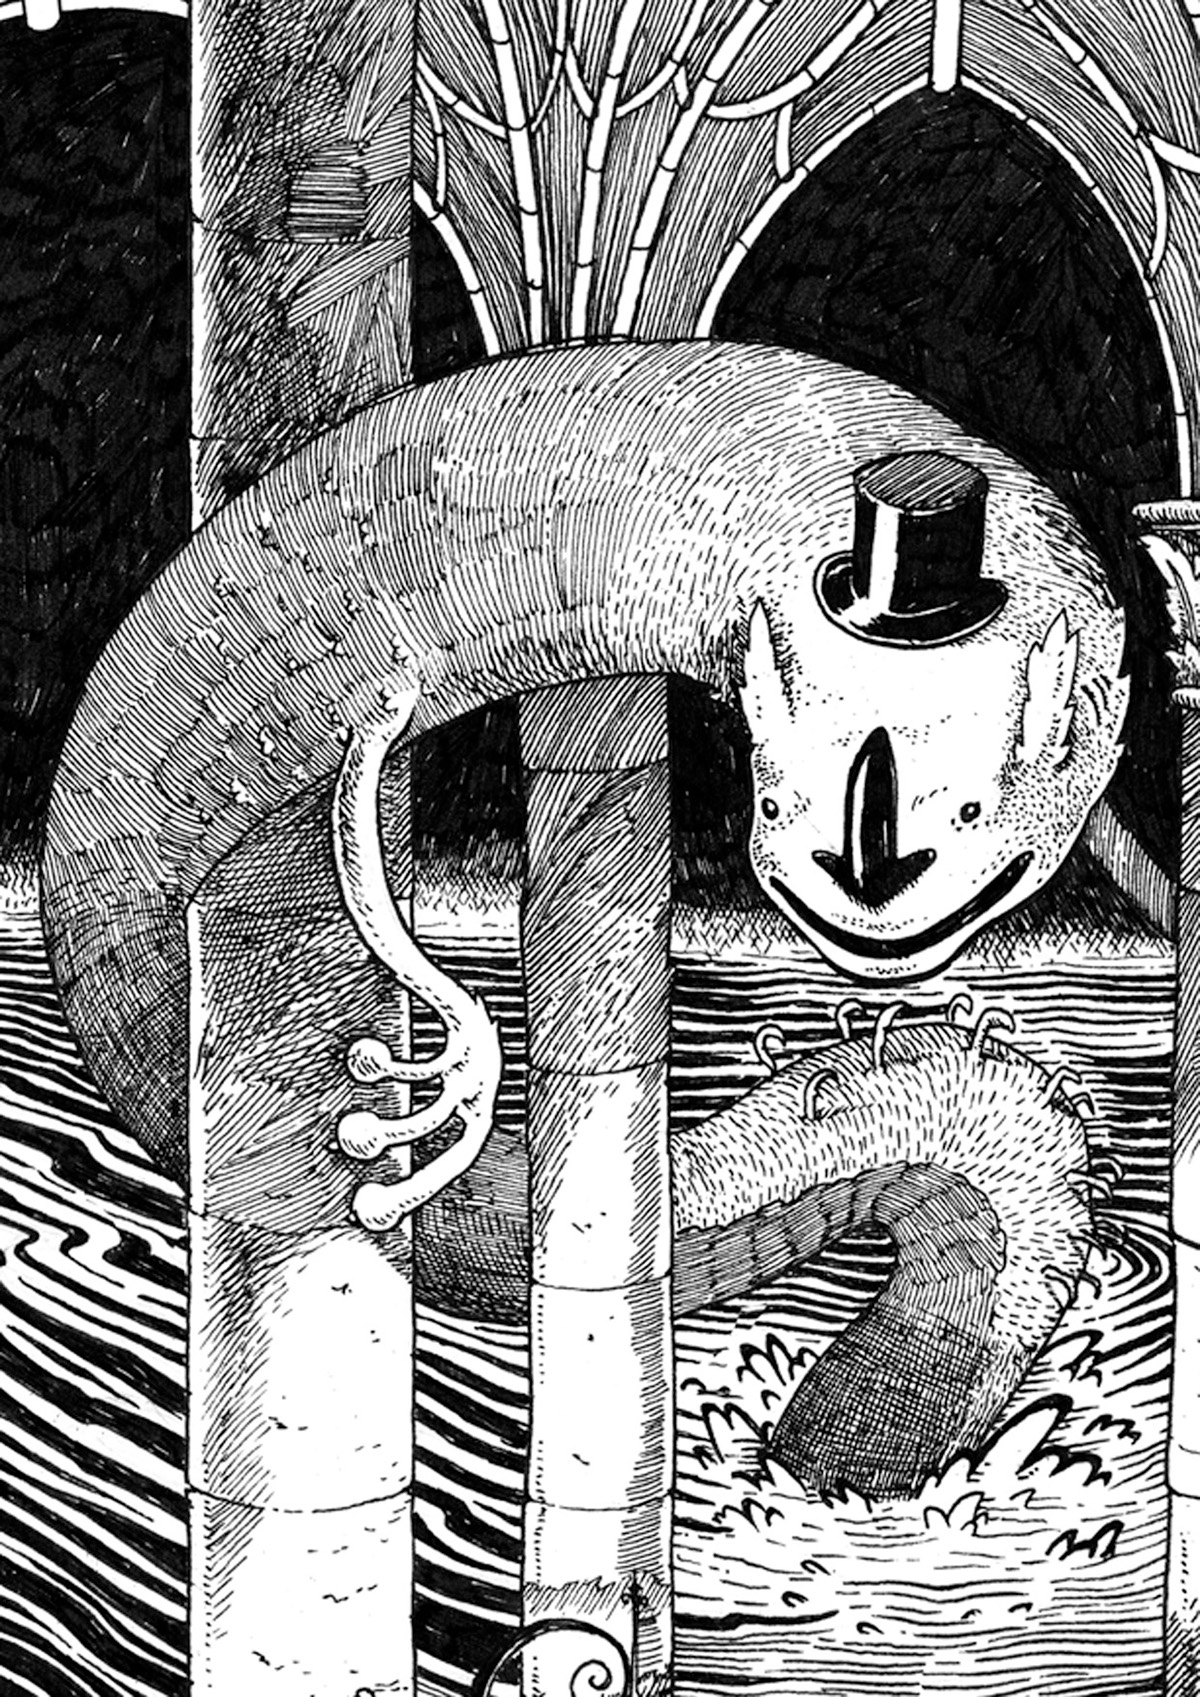 pen paper ink inking etch Hatch graphic comics kraken sea harbor